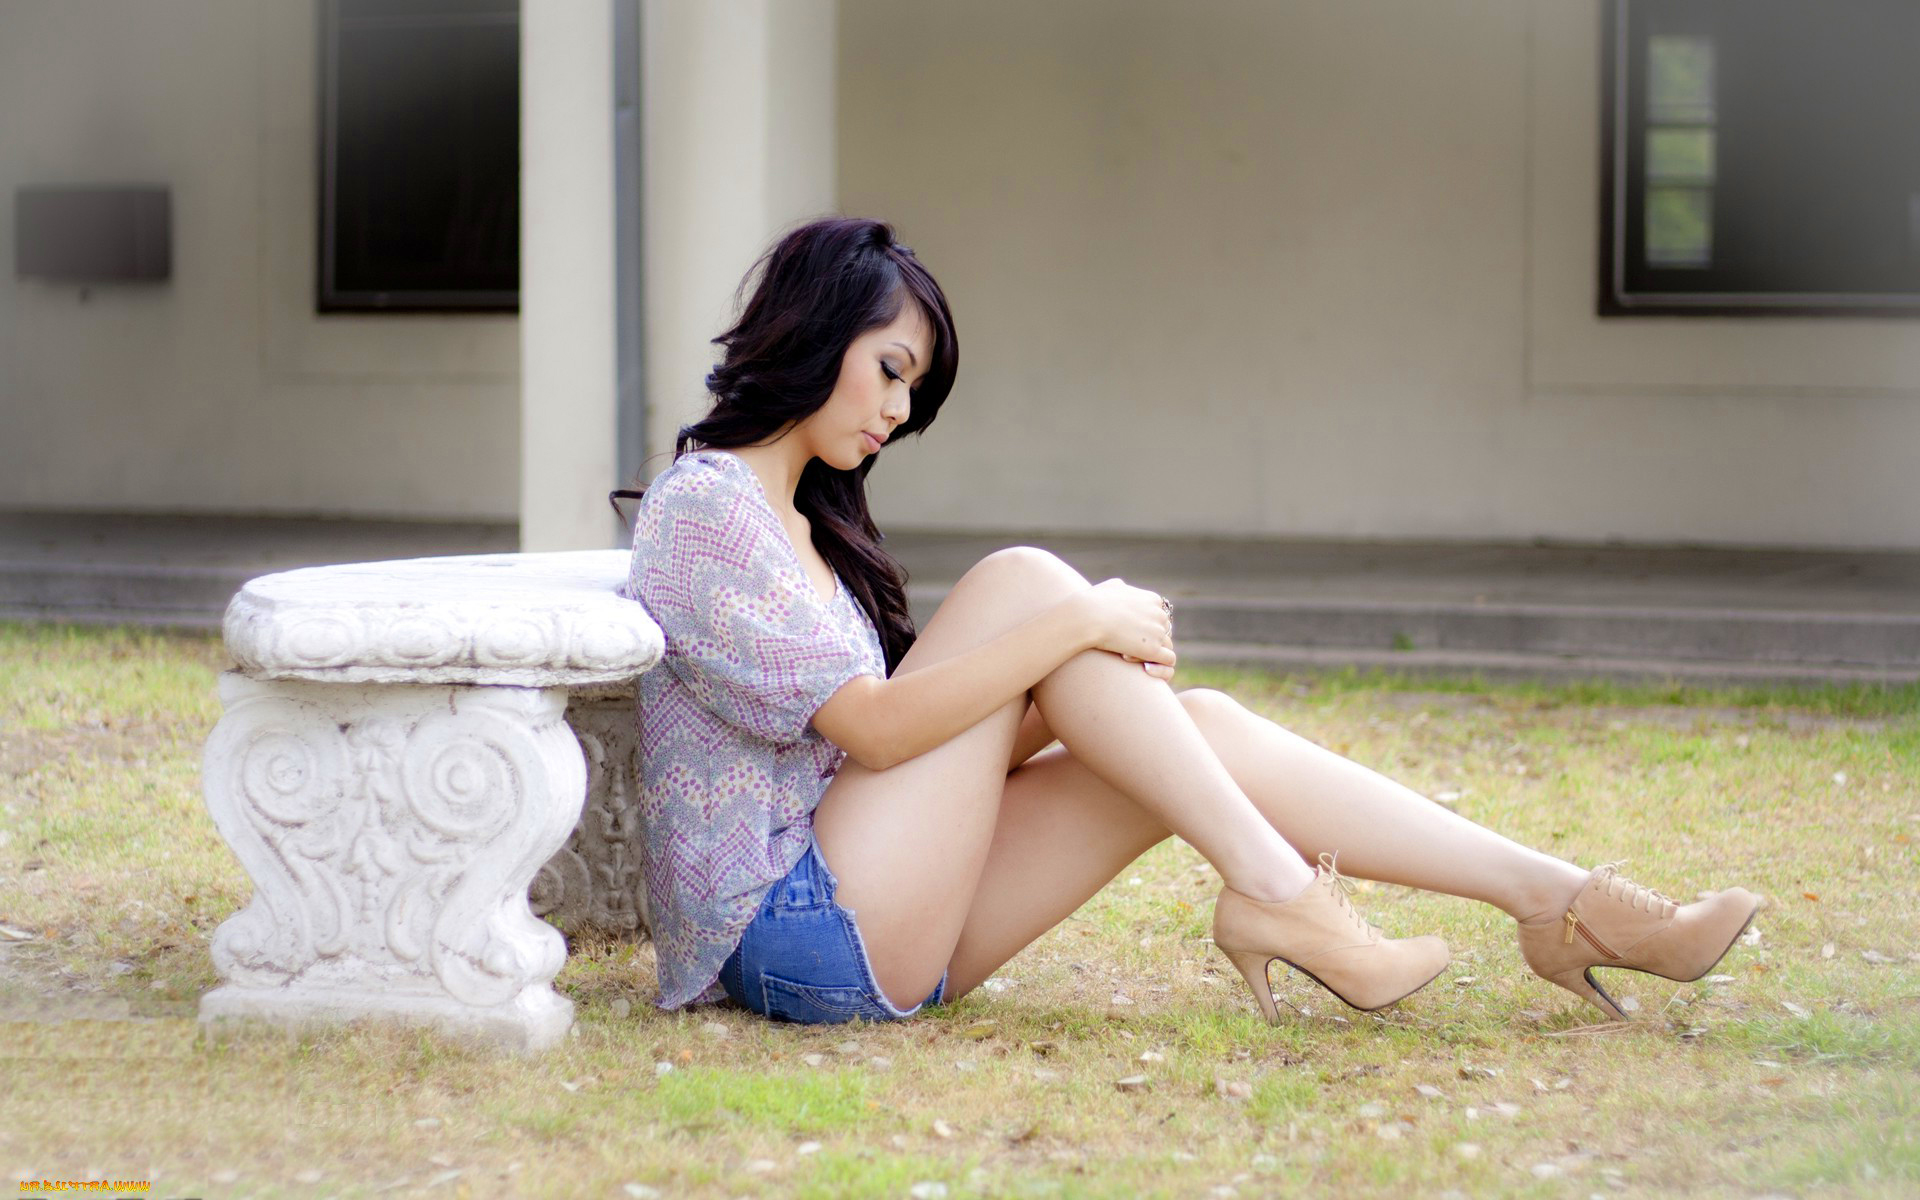 Asian Girl High Heels - HD Wallpaper 